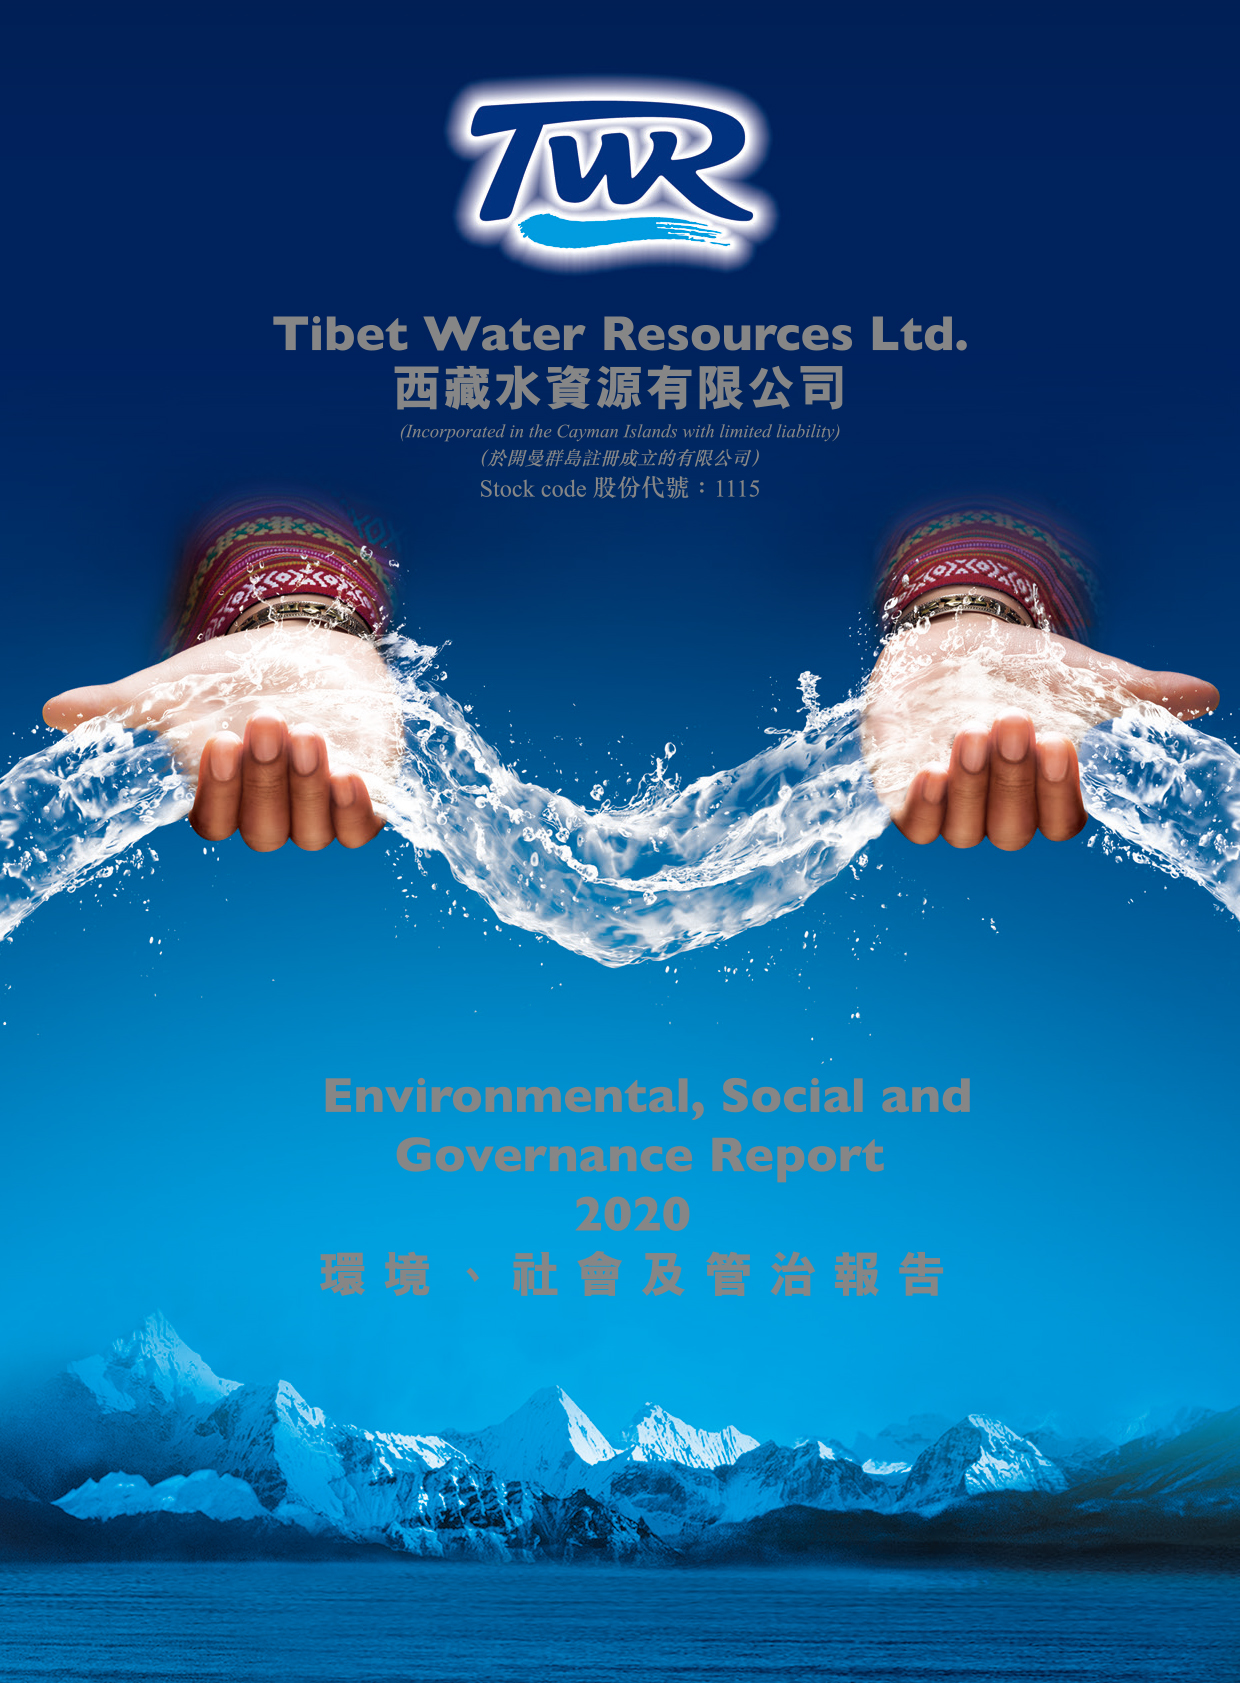 西藏水資源有限公司